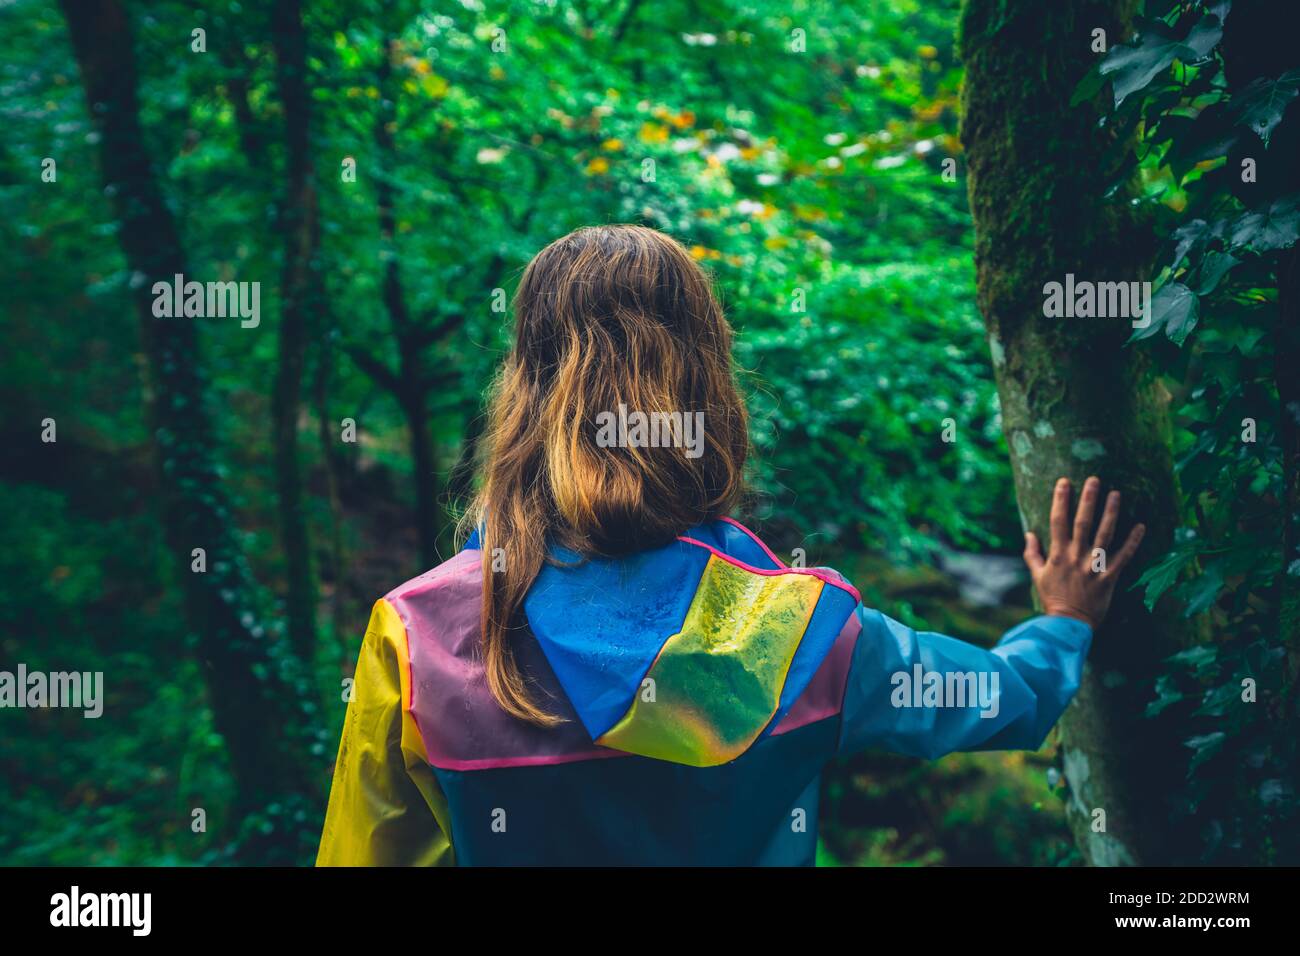 Une jeune femme portant un imperméable touche les arbres dans une forêt Banque D'Images